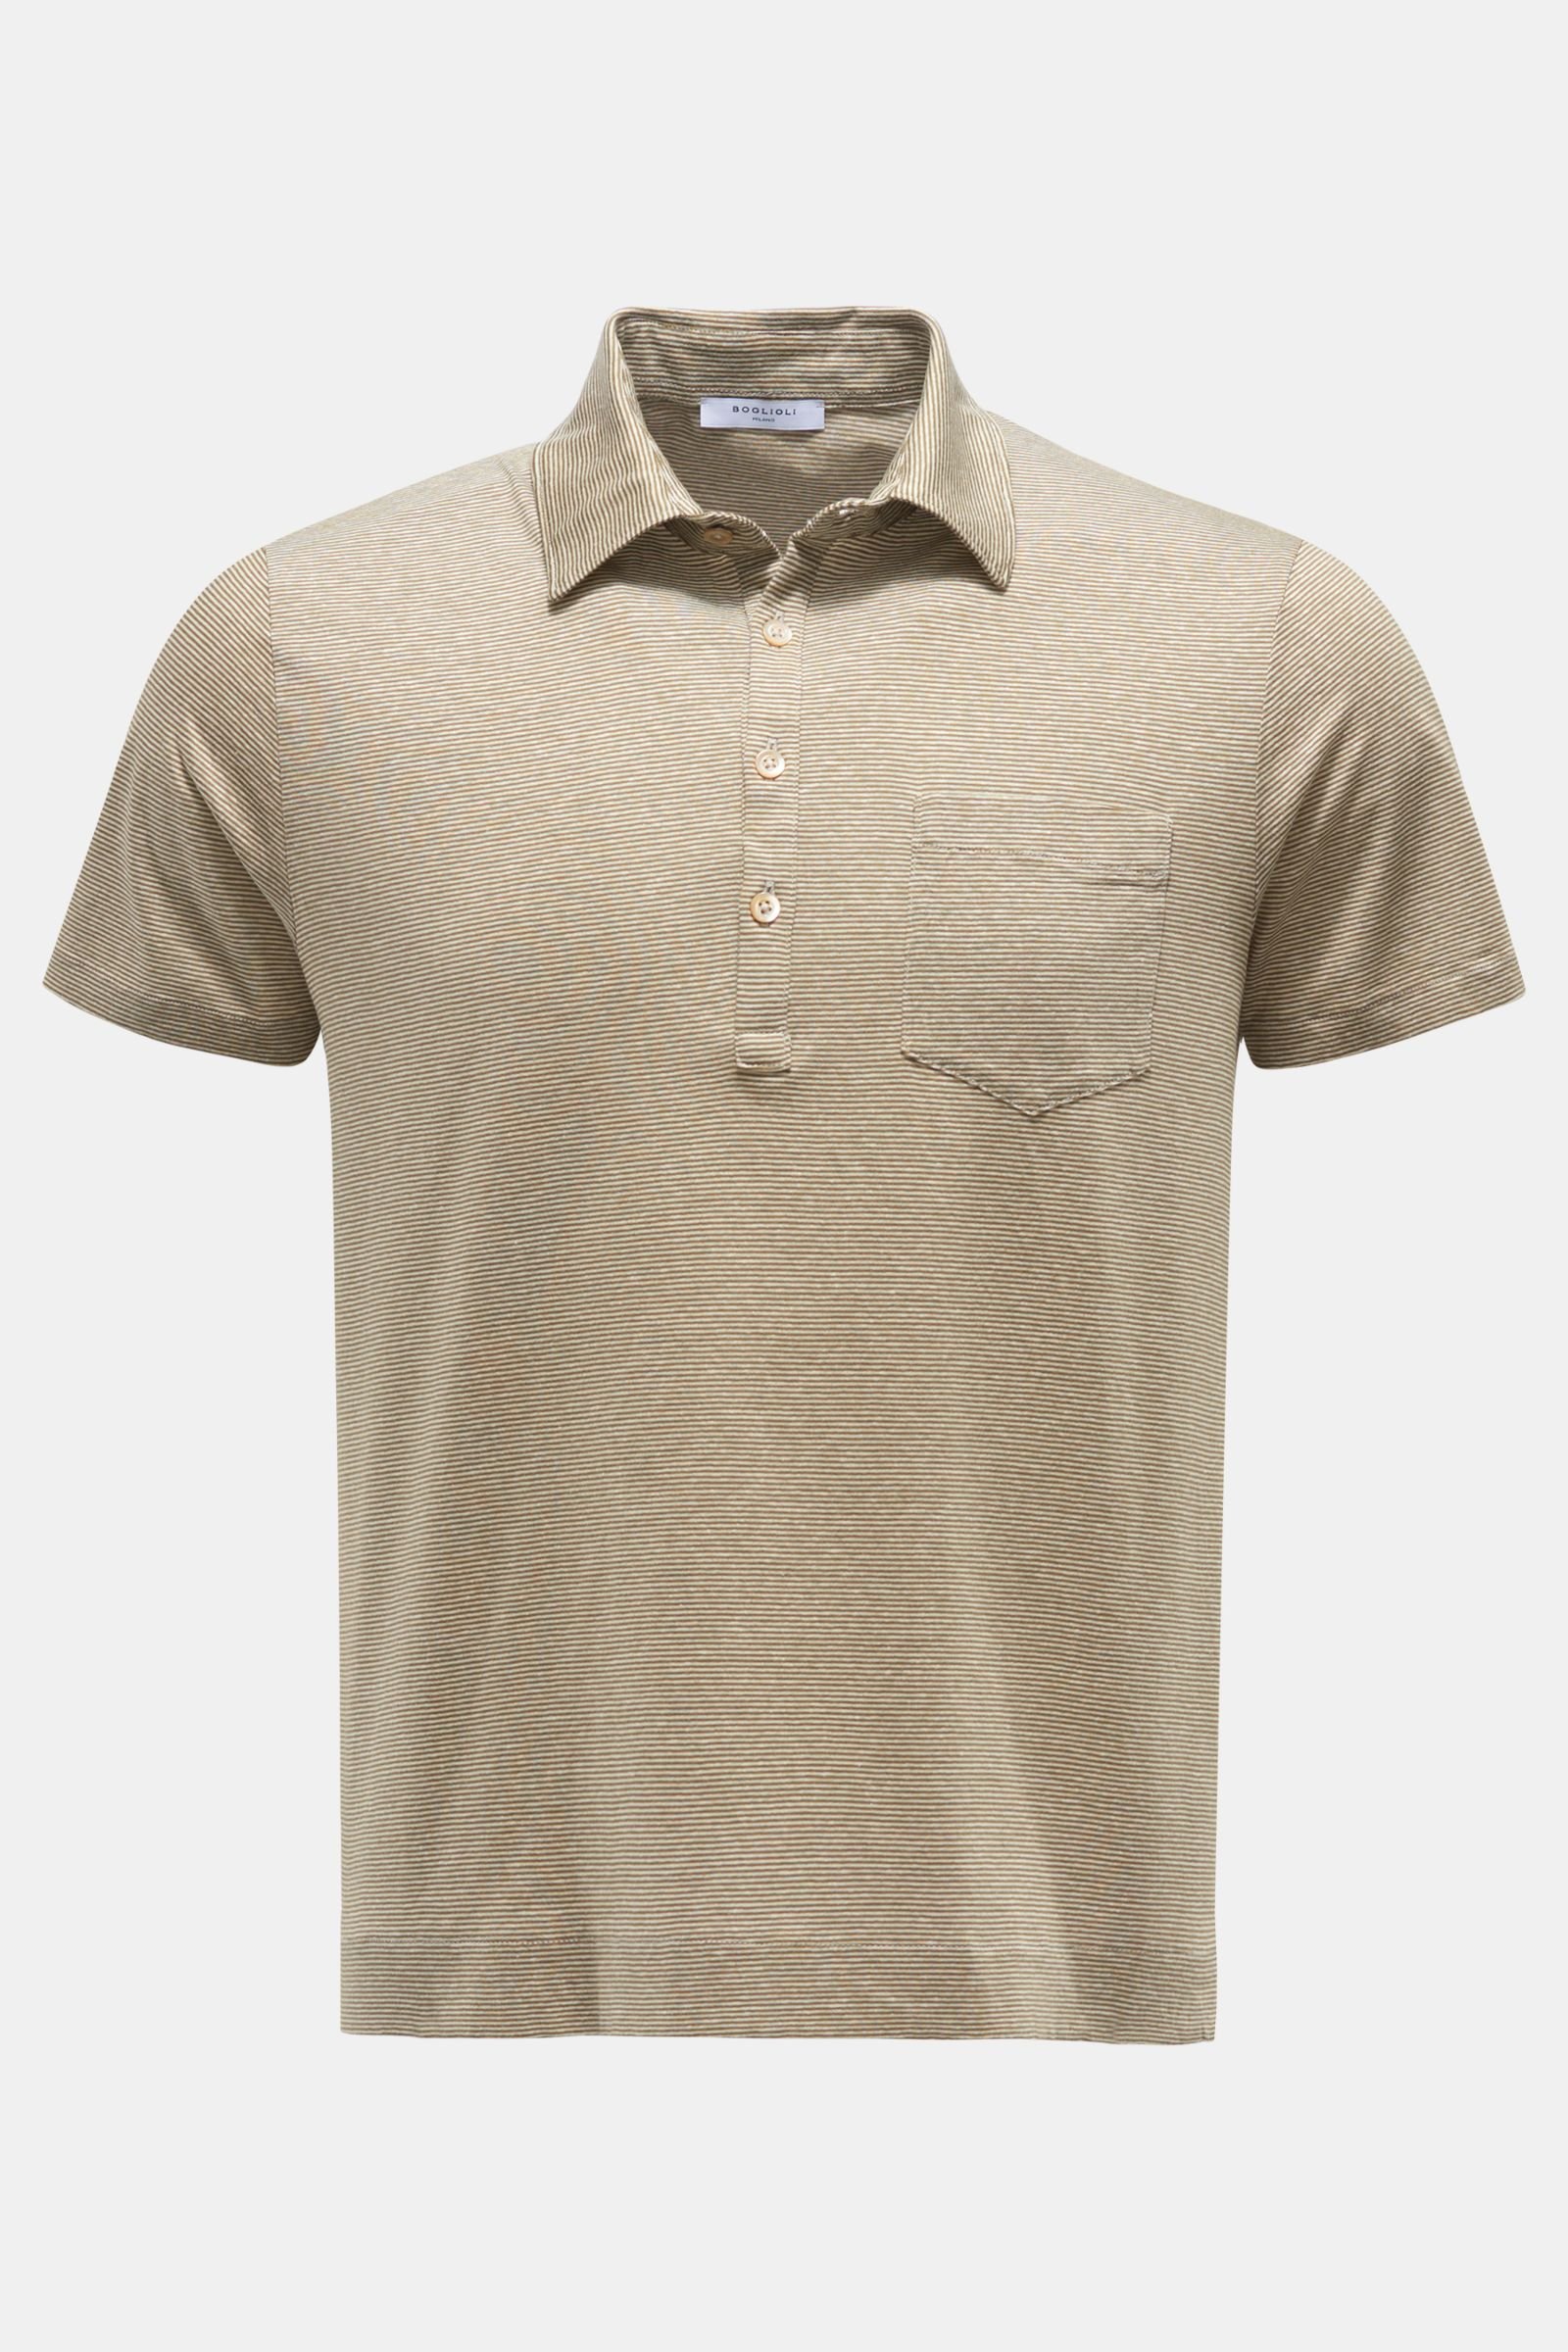 Jersey-Poloshirt oliv/weiß gestreift